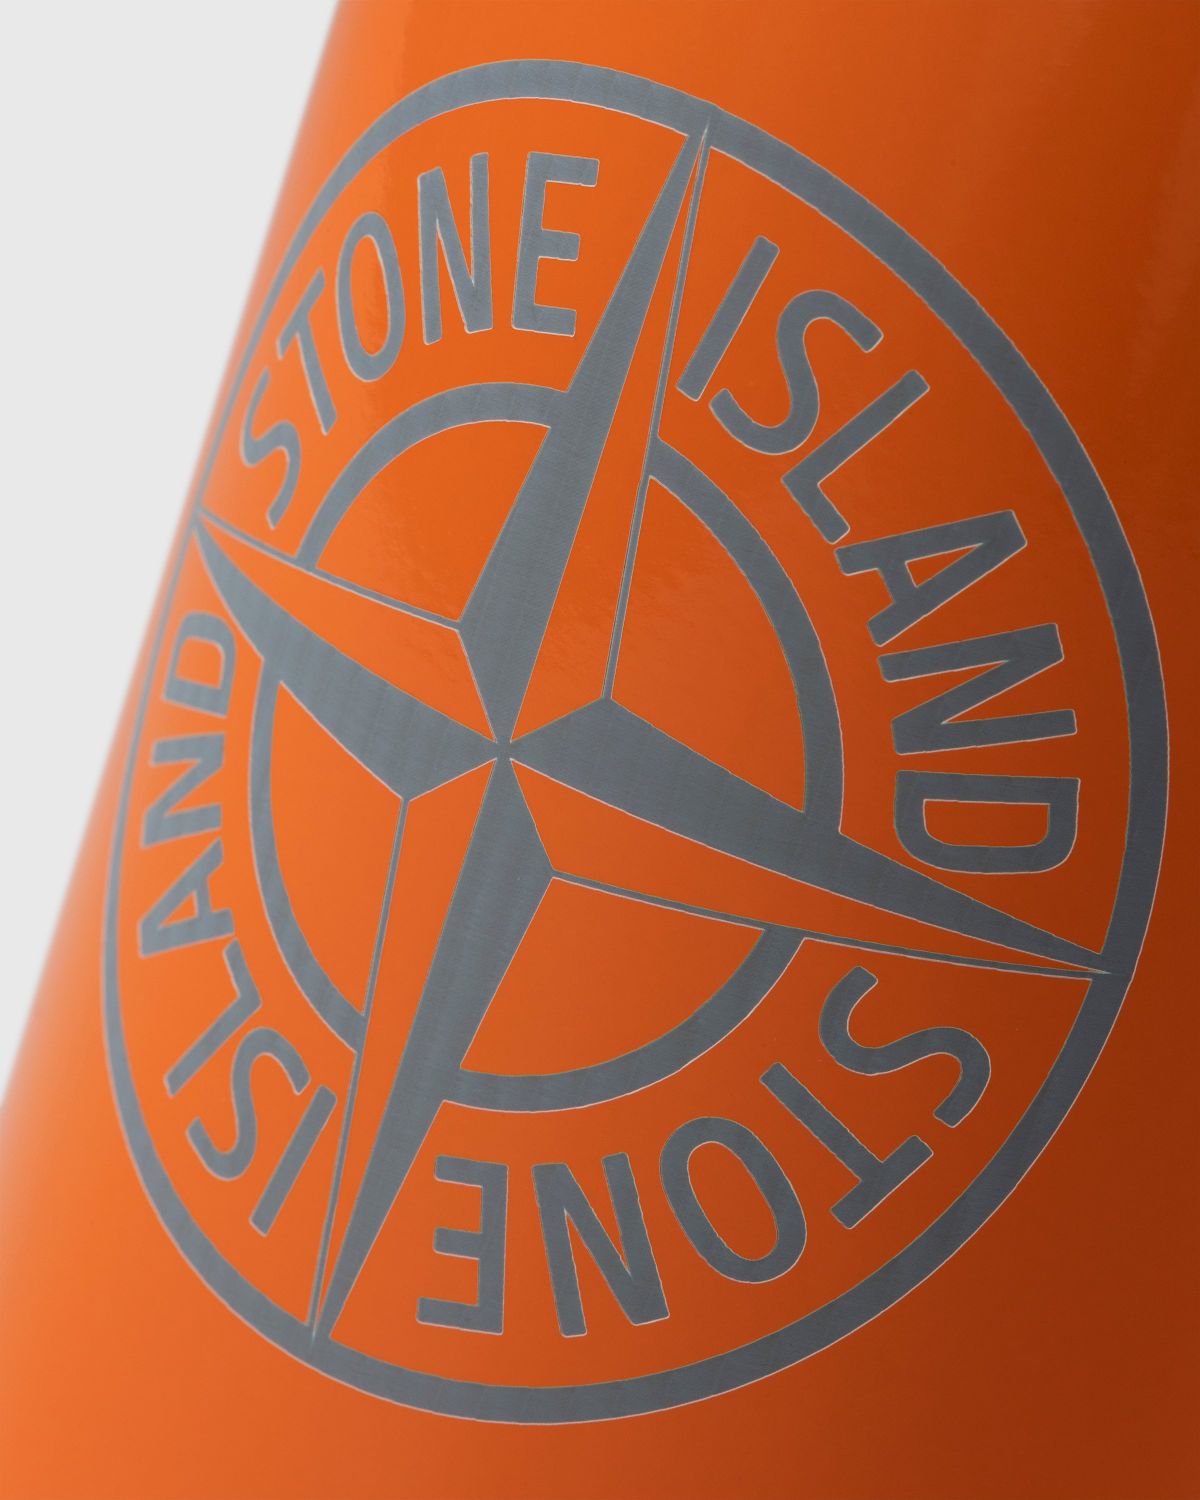 Stone Island – 97069 Clima Bottle Orange - Lifestyle - Orange - Image 6